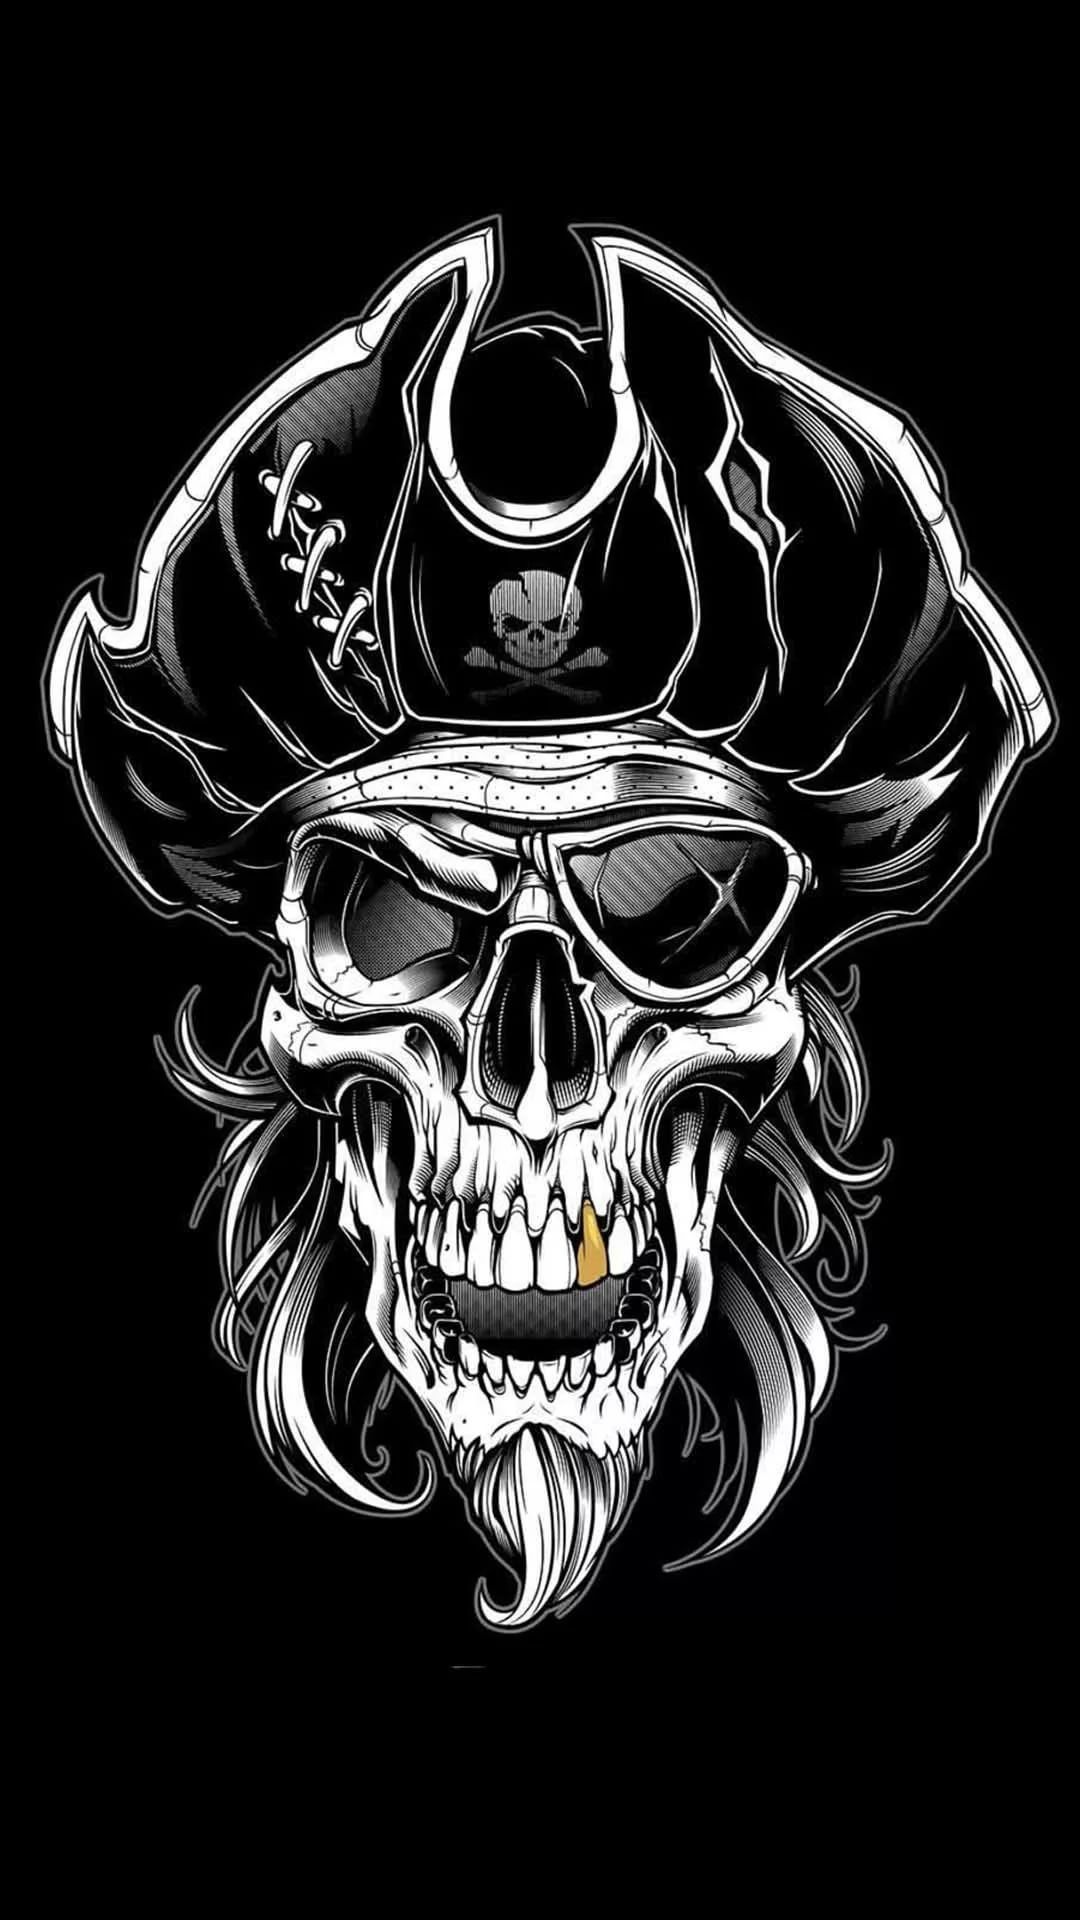 Pirate skull aesthetic Wallpaper Download